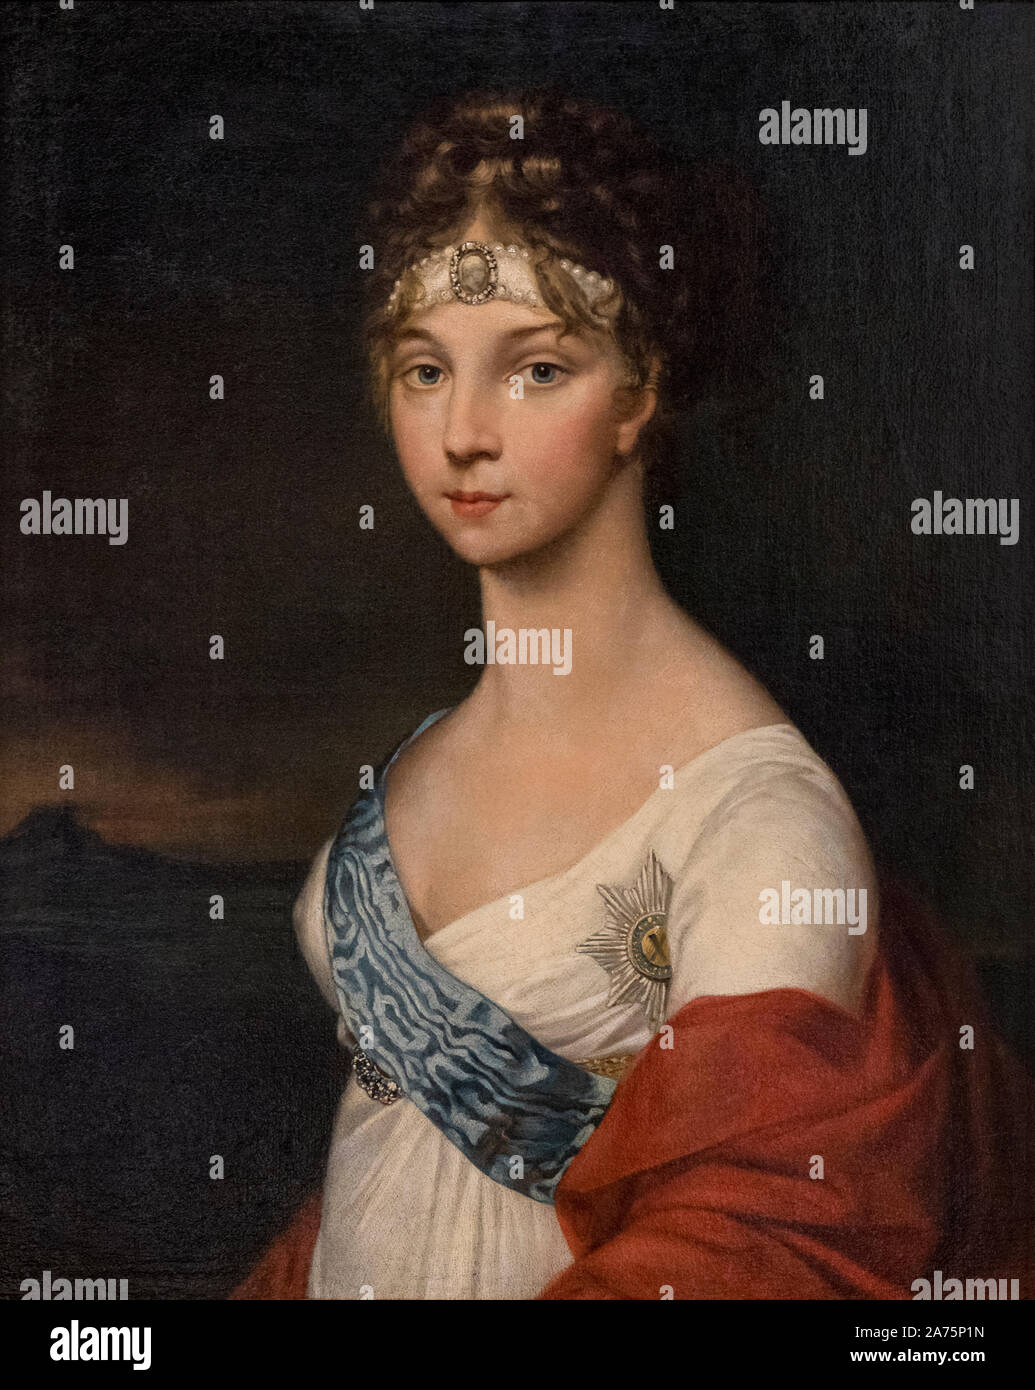 Retrato de la emperatriz Elizabeth Alexeyevna o Alexeievna, 1779 - 1826. Esposa de Alejandro I de Rusia. Después de una obra de agosto Tischbein. Foto de stock